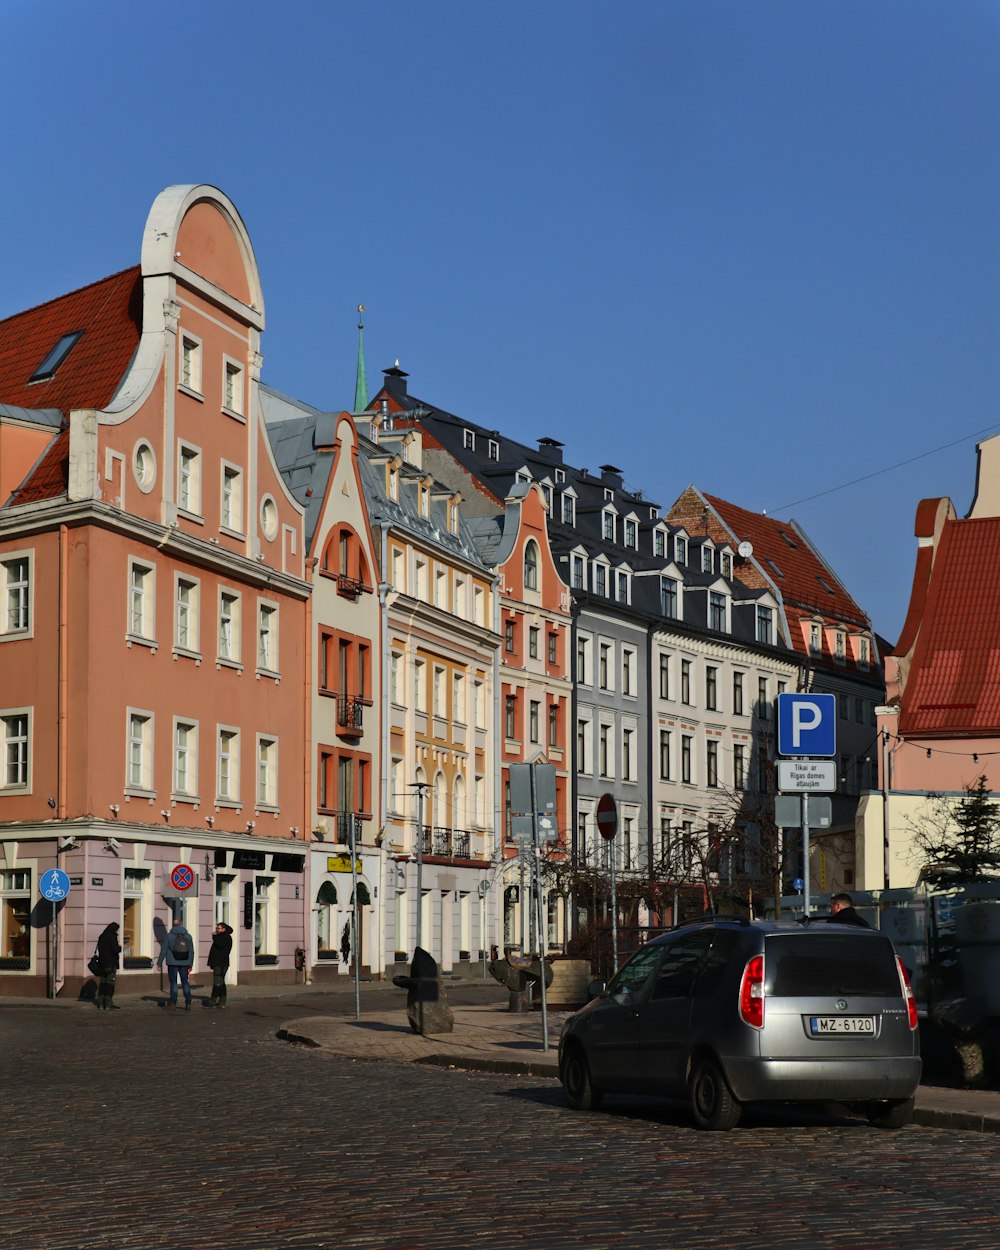 a row of buildings on a city street